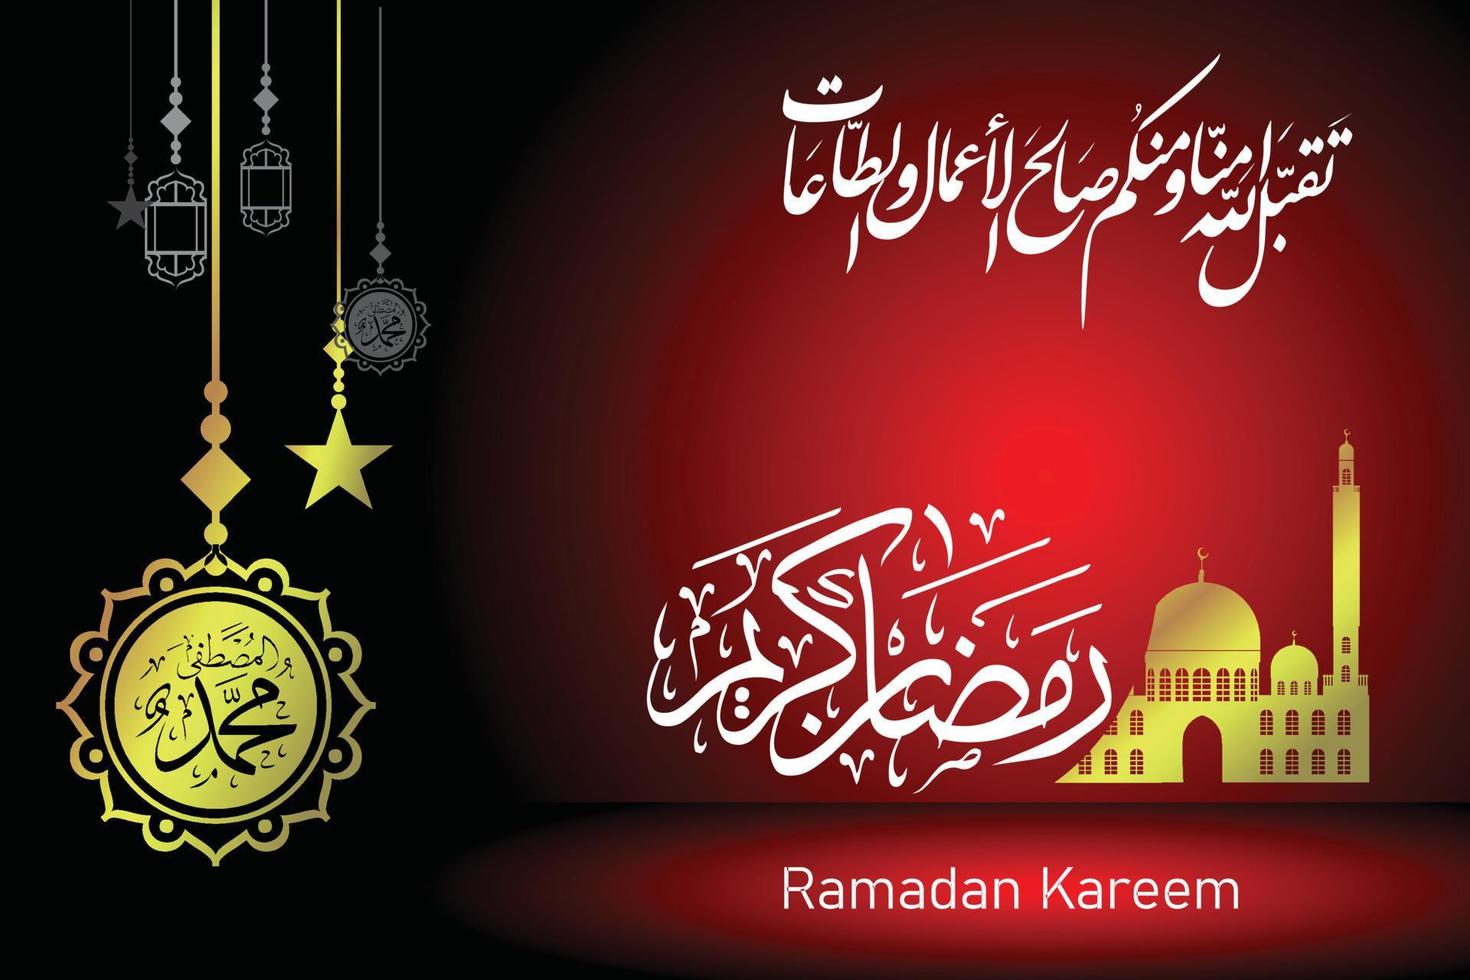 vektor ilustration av ramadan kareem guld kalligrafi typografi i gradien bakgrund mörk röd och svart bakgrund elegan begrepp